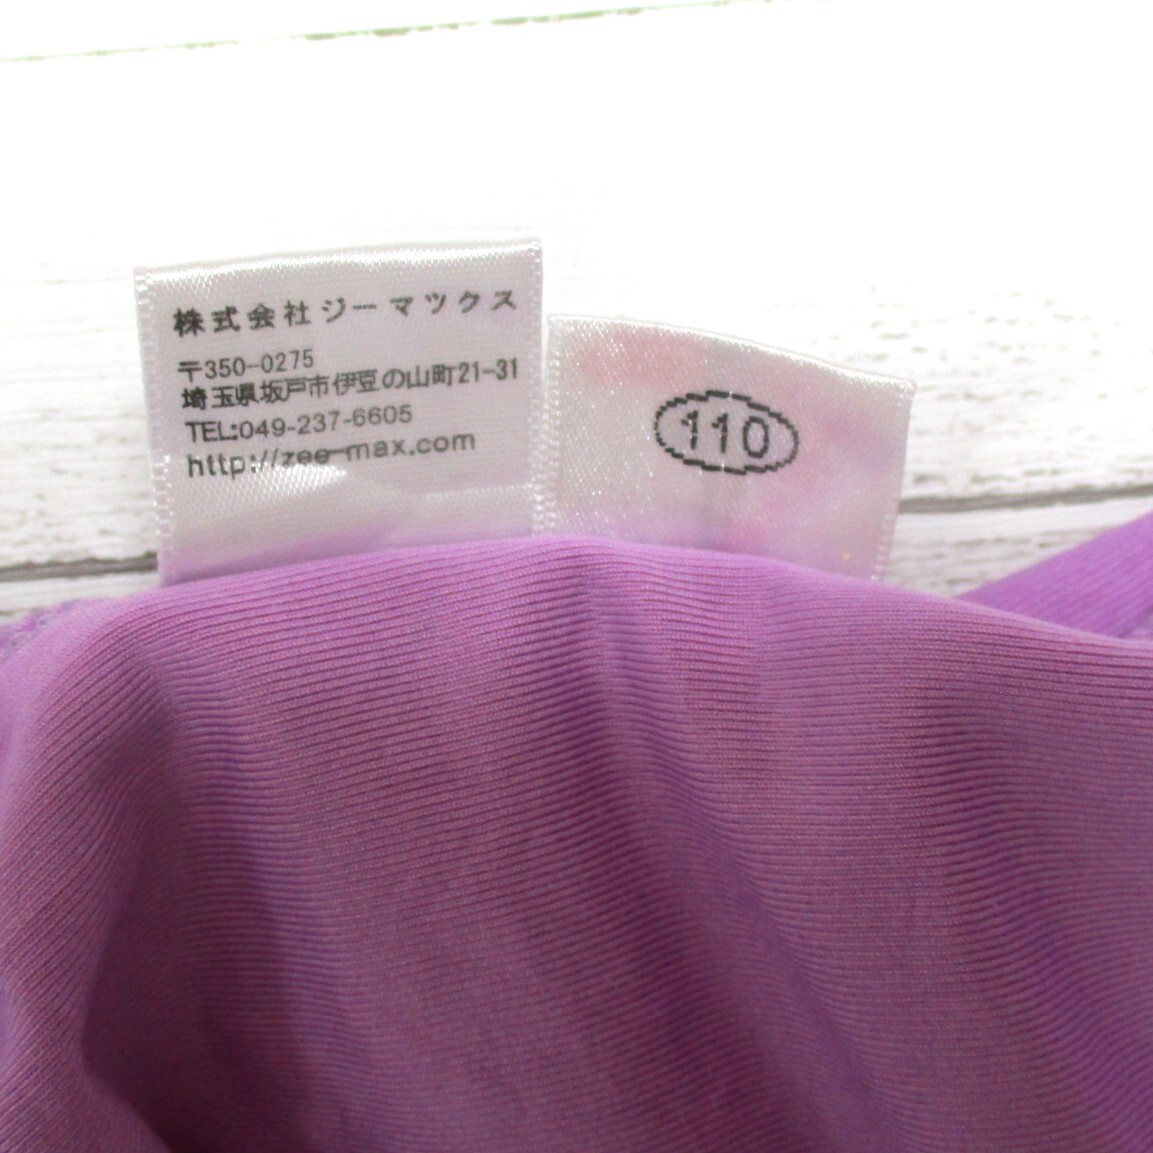 U7859★amabile レオタード バレエ ジュニア 女子 110サイズ 薄紫 パープル 衣装 かわいい 器械体操 新体操 ダンス 競技 エアロビ_画像5